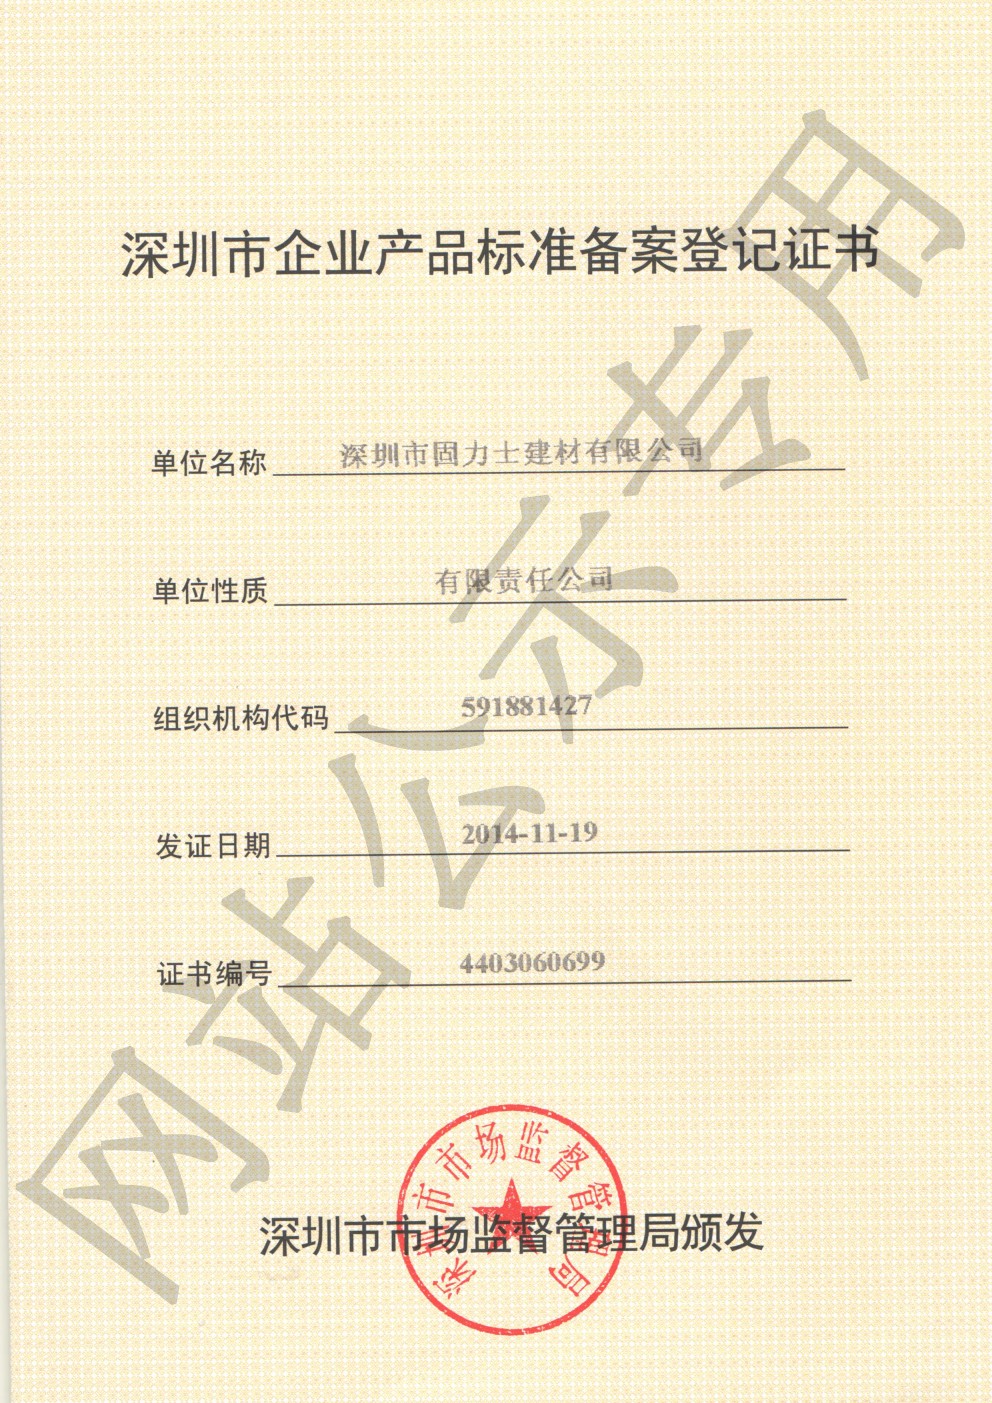 阳江镇企业产品标准登记证书